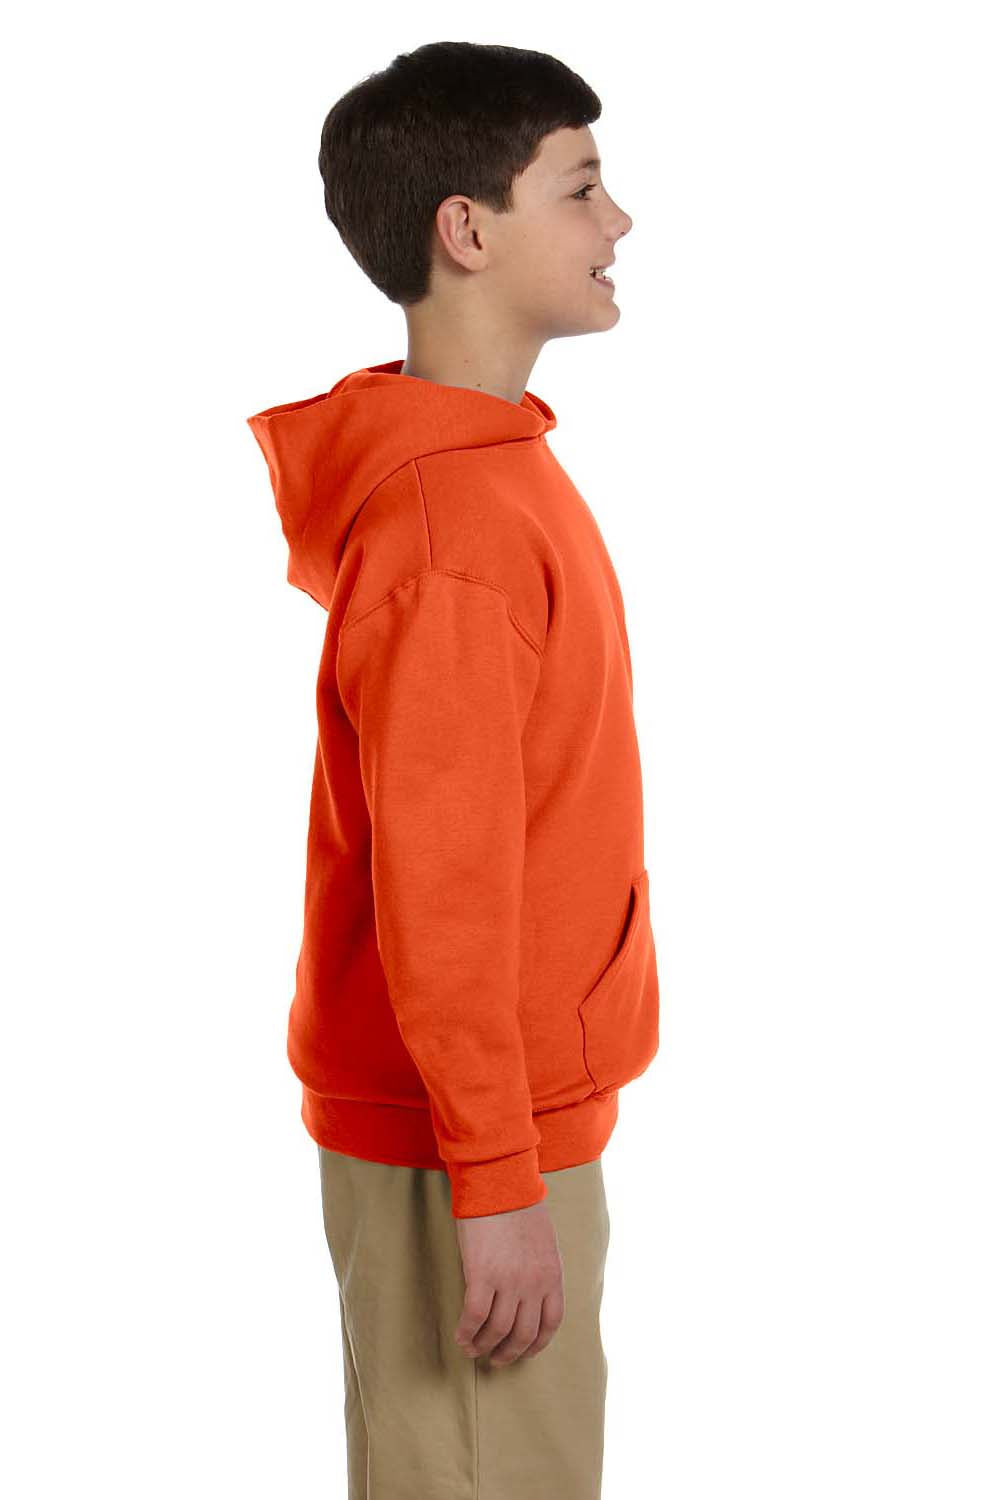 Jerzees 996Y Youth NuBlend Fleece Hooded Sweatshirt Hoodie Burnt Orange Side